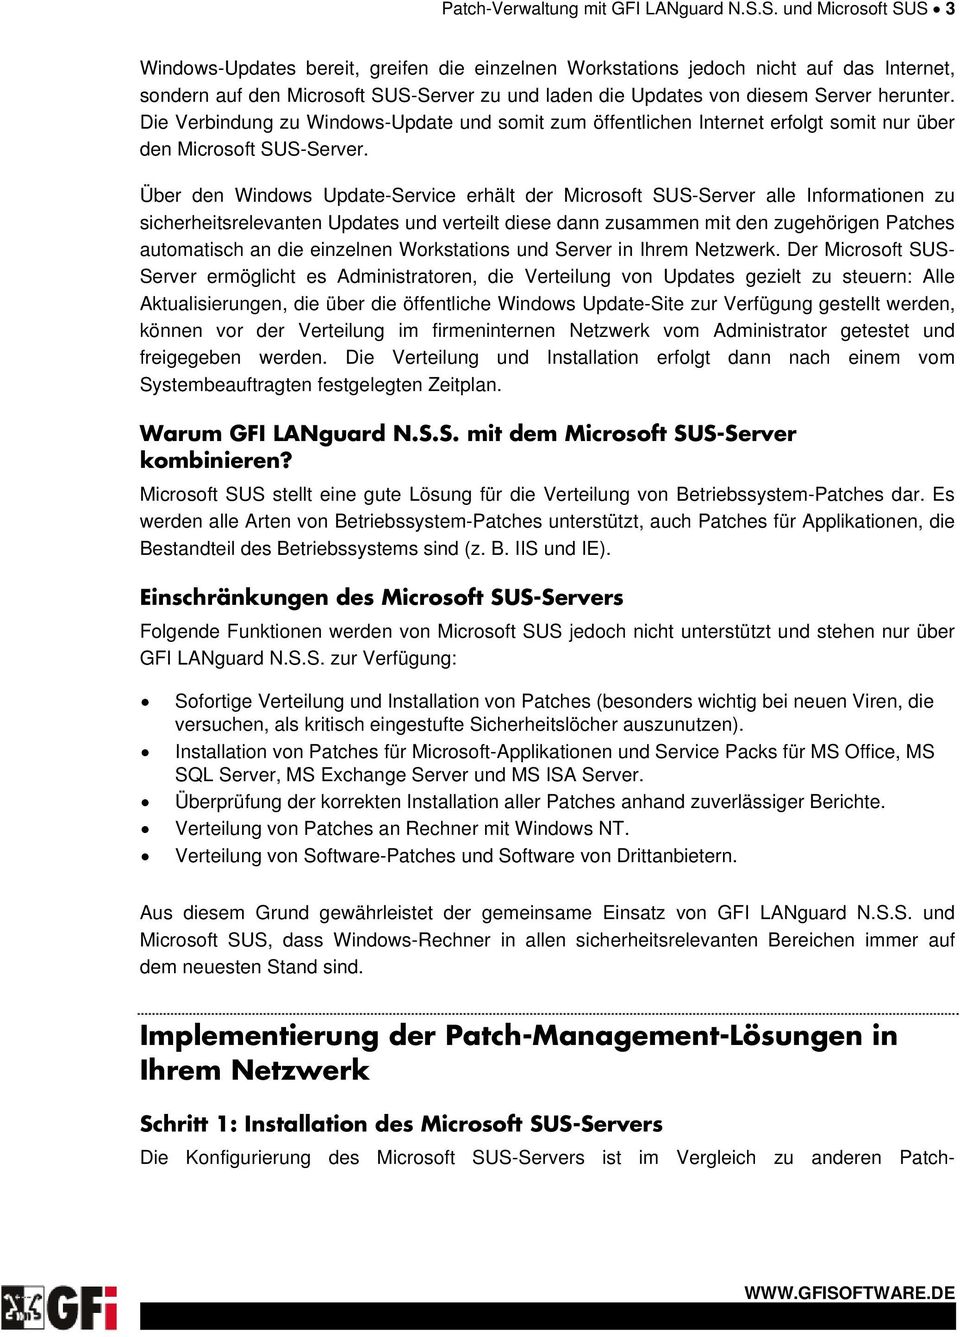 herunter. Die Verbindung zu Windows-Update und somit zum öffentlichen Internet erfolgt somit nur über den Microsoft SUS-Server.